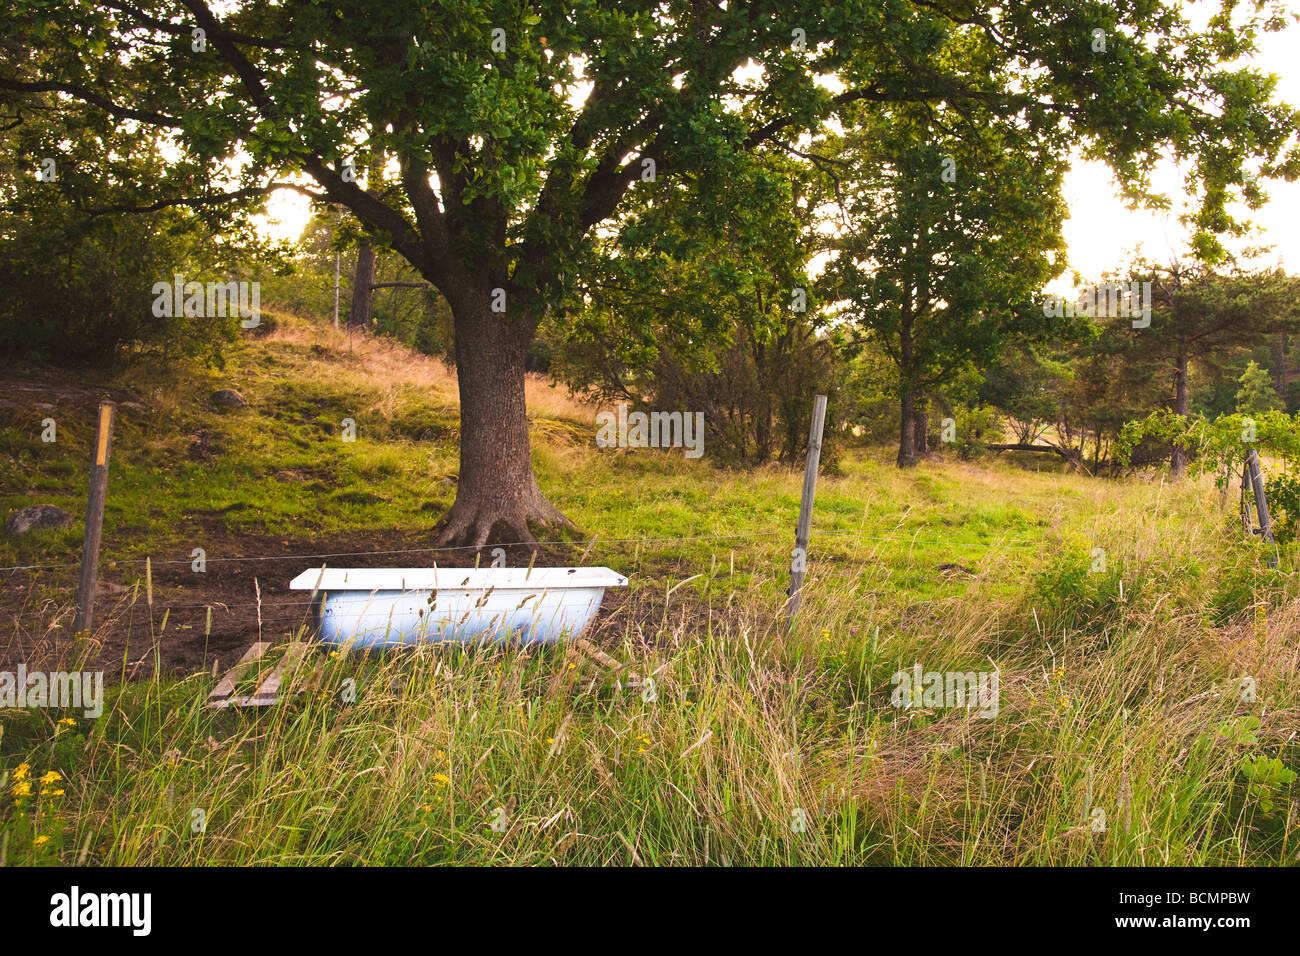 Surreale ländlichen Konzept Märchen inspiriert Bild von einer Badewanne unter einem Baum in einem bewachsenen Feld auf einen glühenden Sommer Sonnenuntergang. Stockfoto